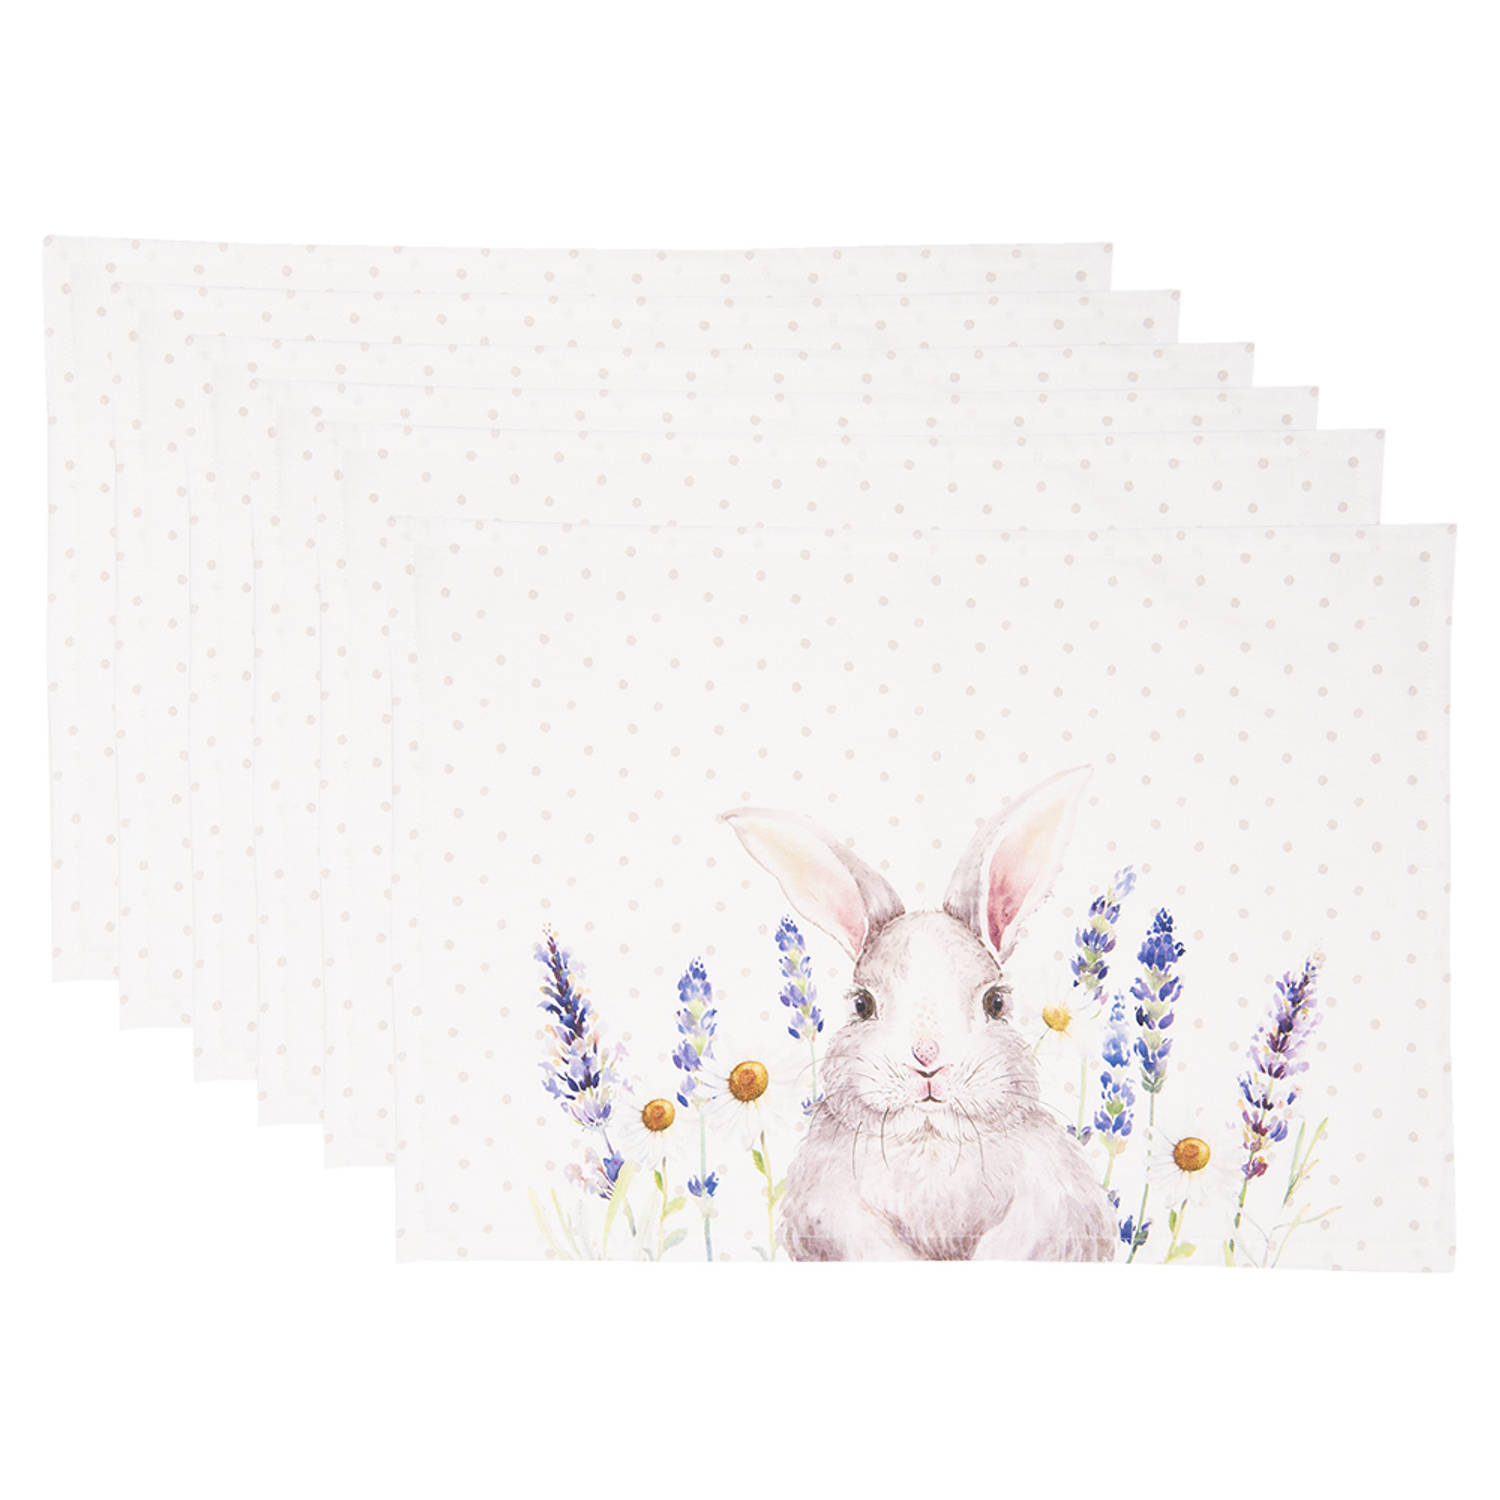 HAES DECO - Set van 6 Placemats - formaat 48x33 cm - kleuren Wit / Paars / Geel - van 100% Katoen - Collectie: Lavender Field